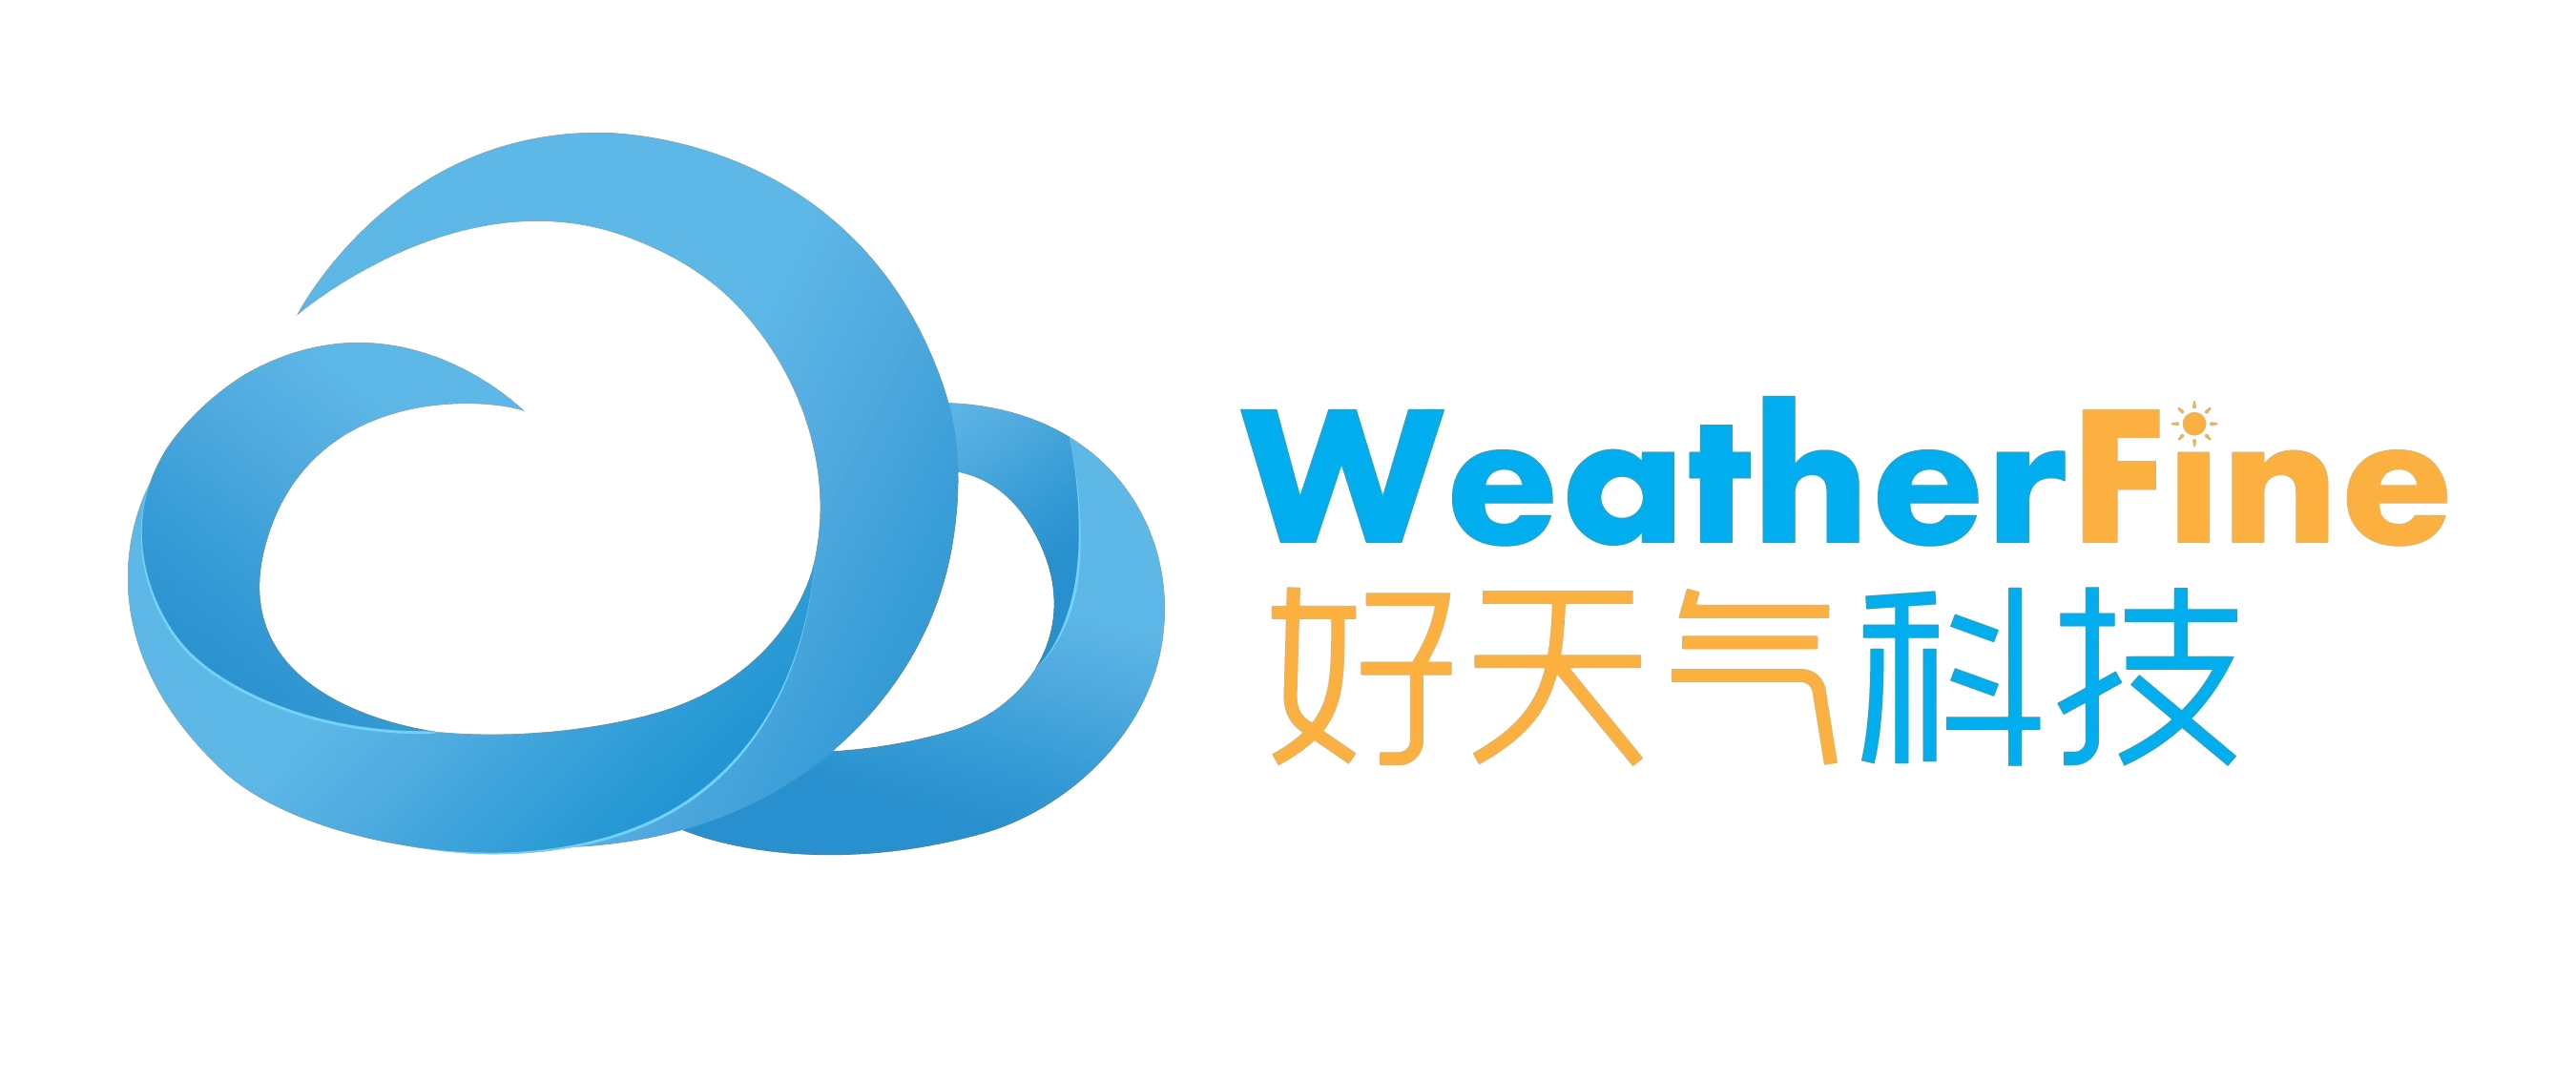 深圳市好天气科技有限公司